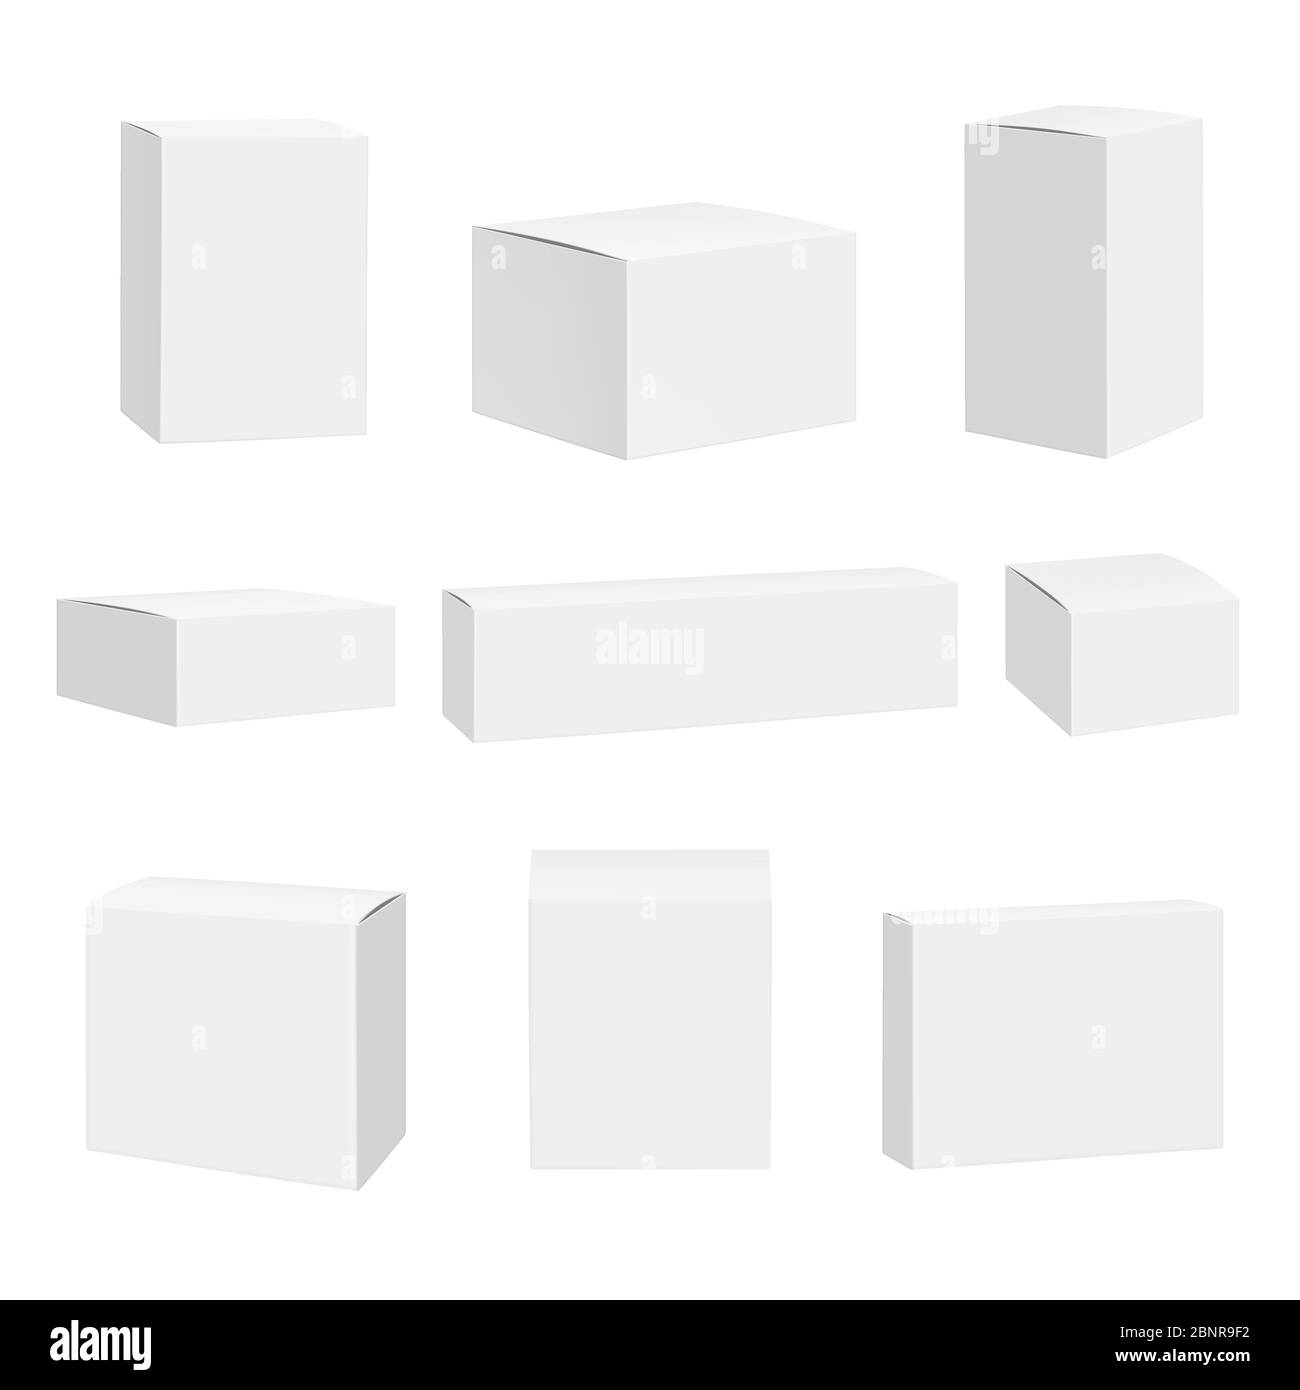 Case blanche vierge. Packages boîtes quadrate de conteneur maquette vectorielle réaliste détaillée Illustration de Vecteur